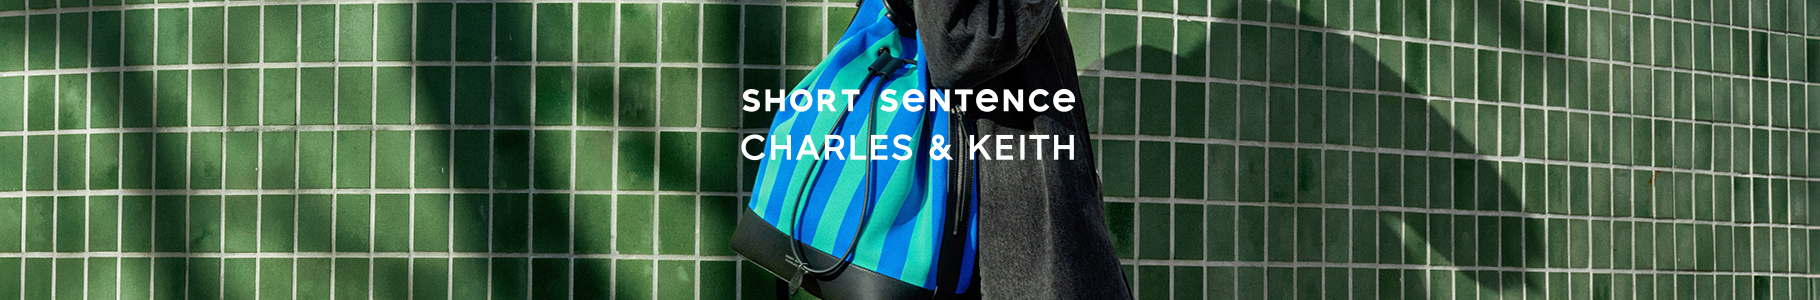 La colección CHARLES & KEITH x Short Sentence